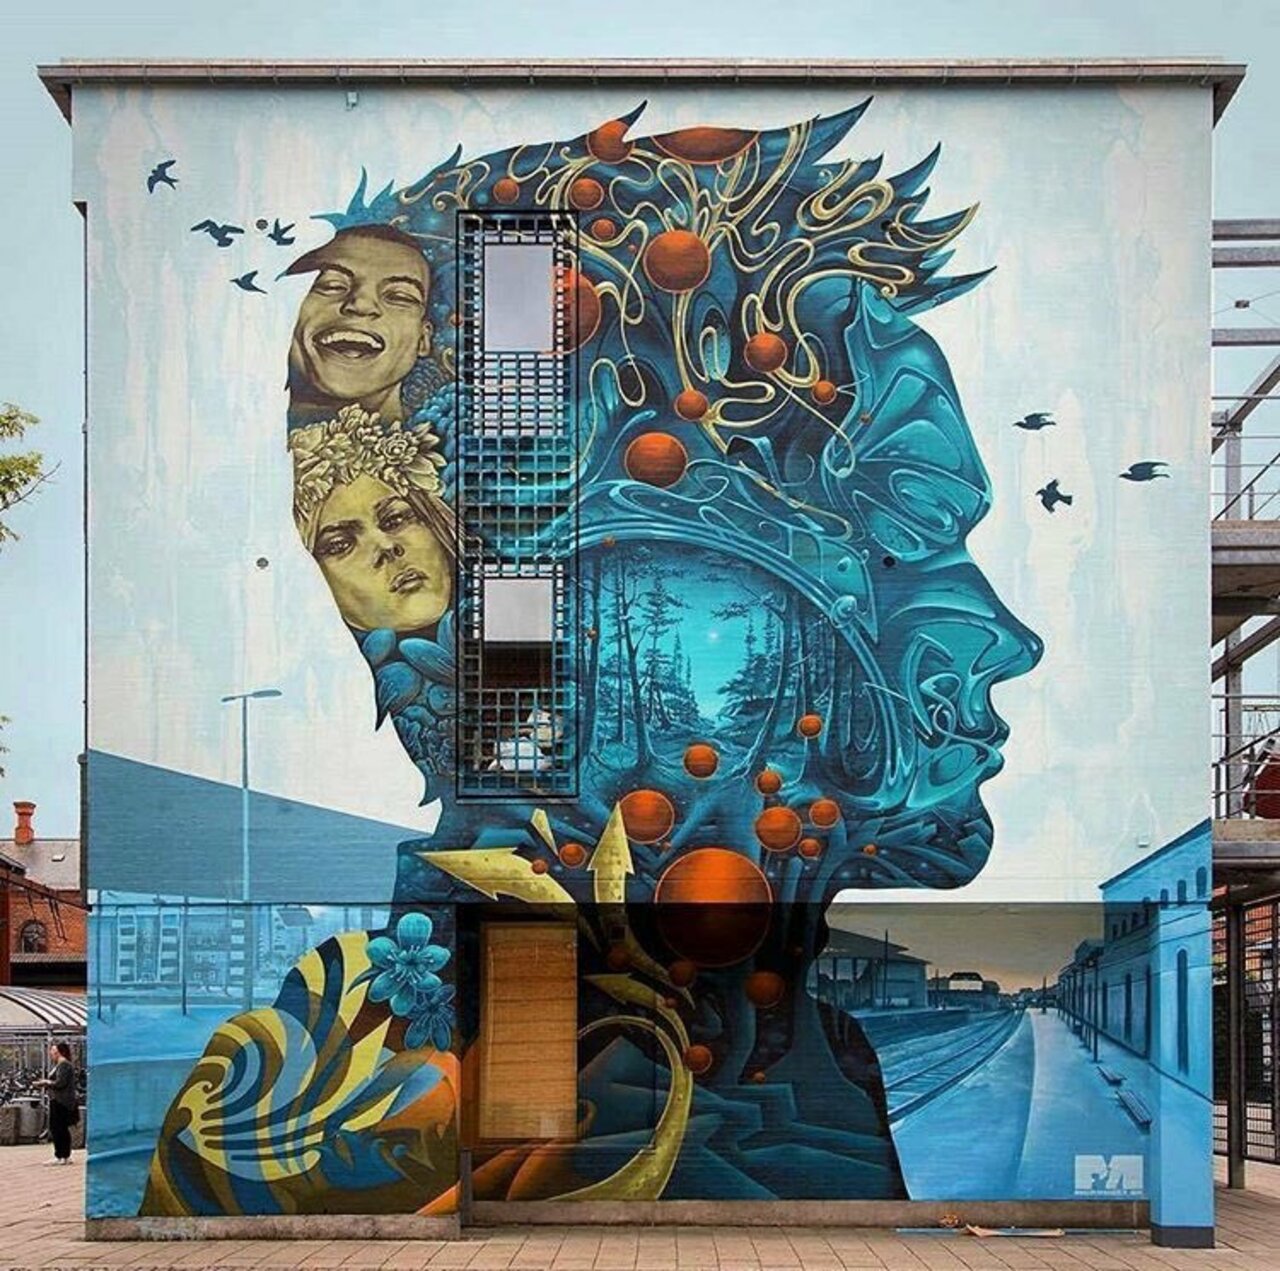 By Nameoner & Michael Wisniewsi in Slagelse, Denmark 🇩🇰 #art #mural #graffiti #streetart #Denmark https://t.co/F8Xxi7aqdn